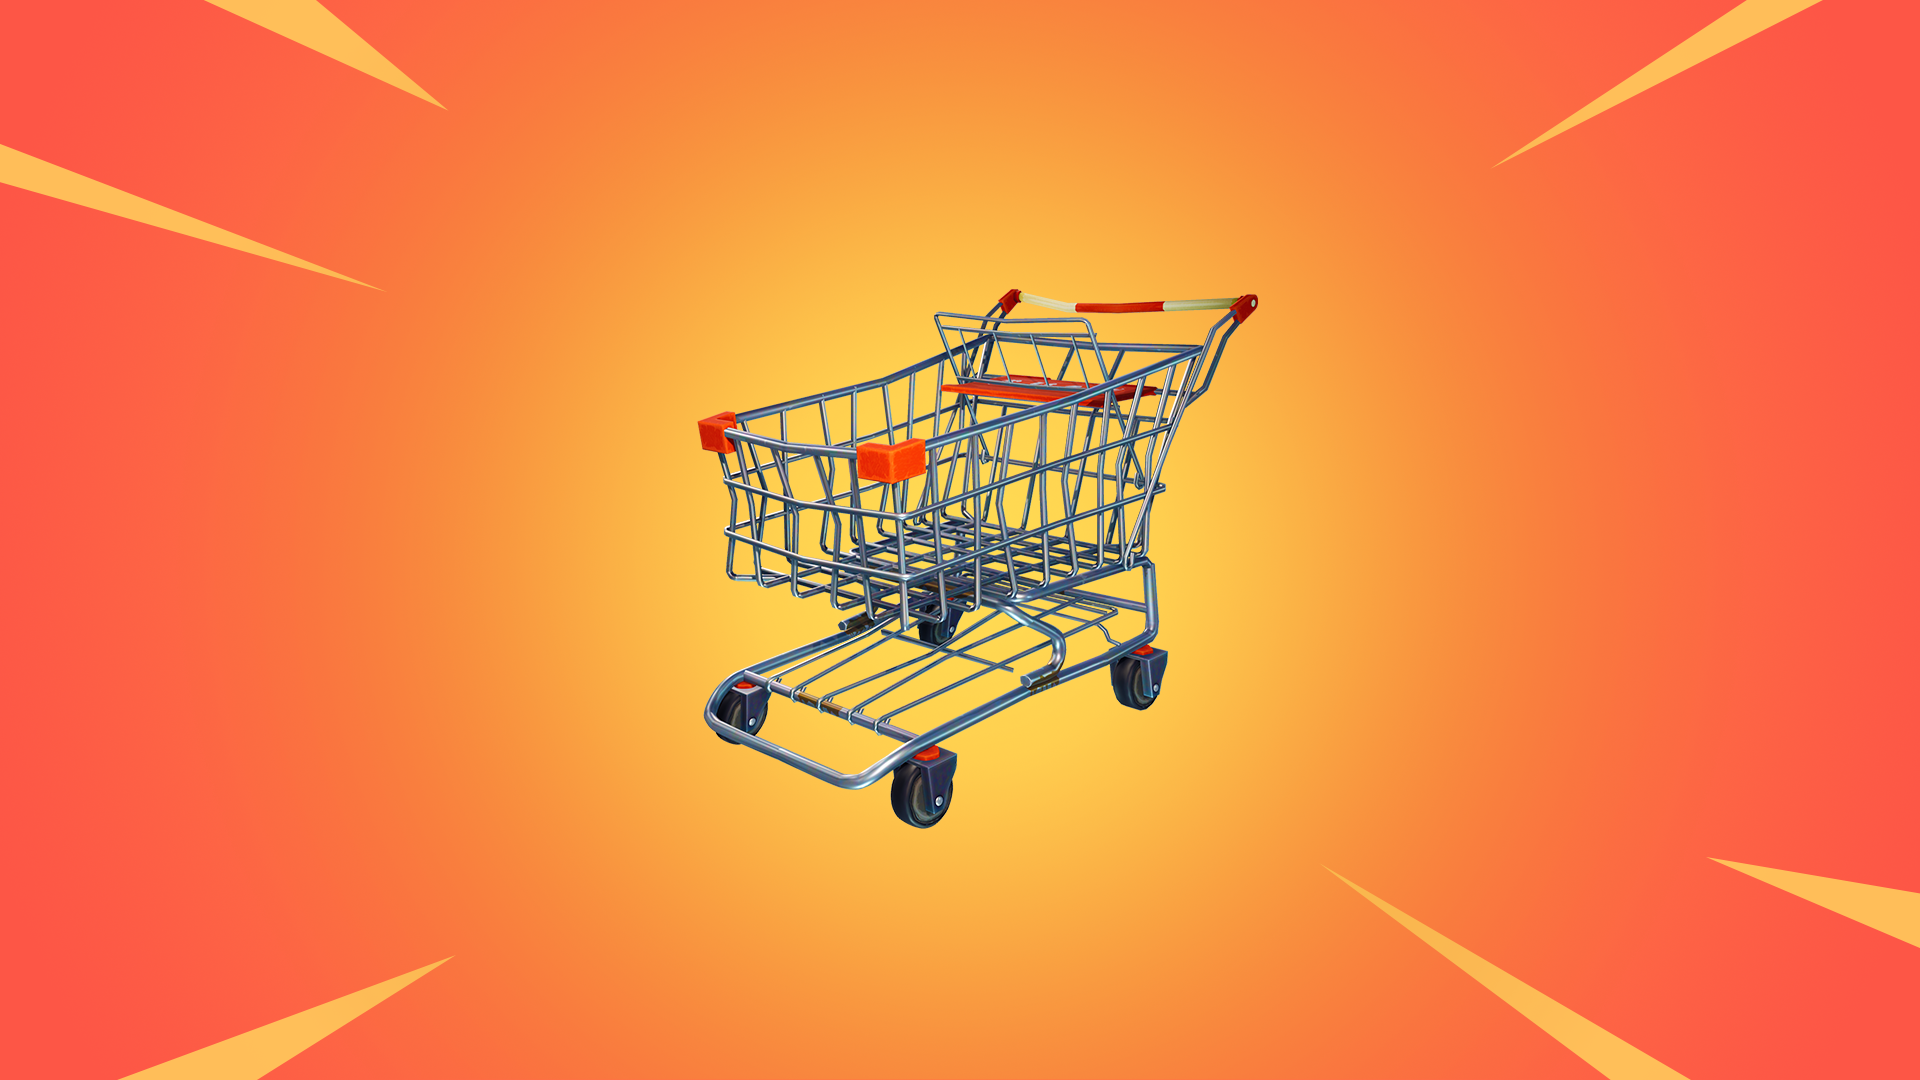 Fortnite shopping cart lineart